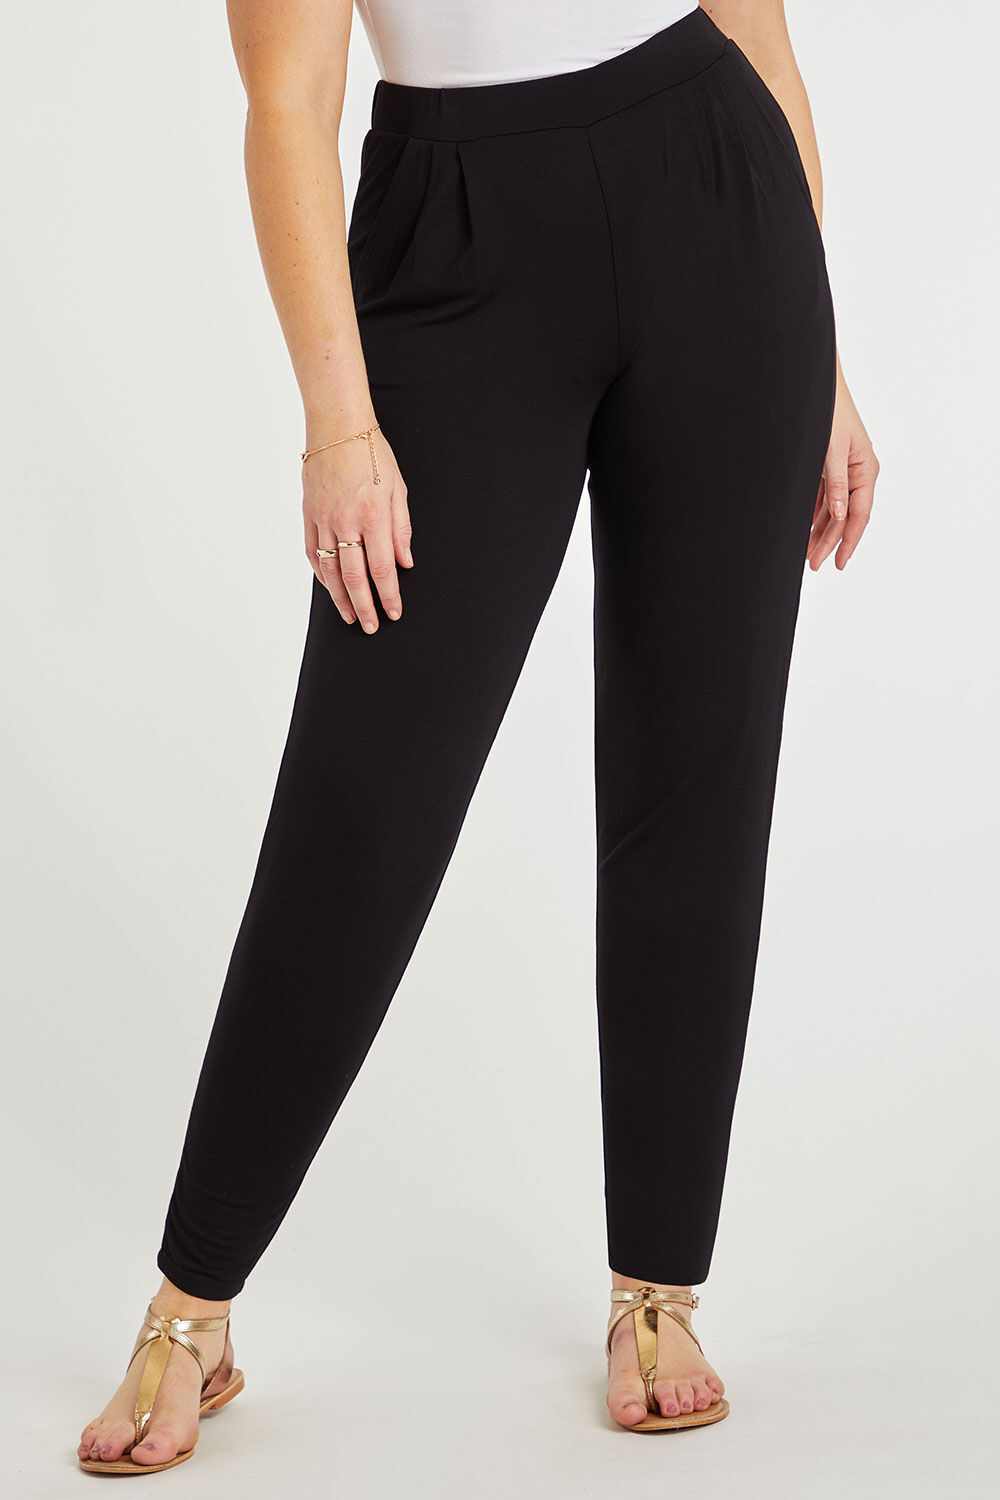 Bonmarche Black Plain Jersey Harem Pants, Size: 10